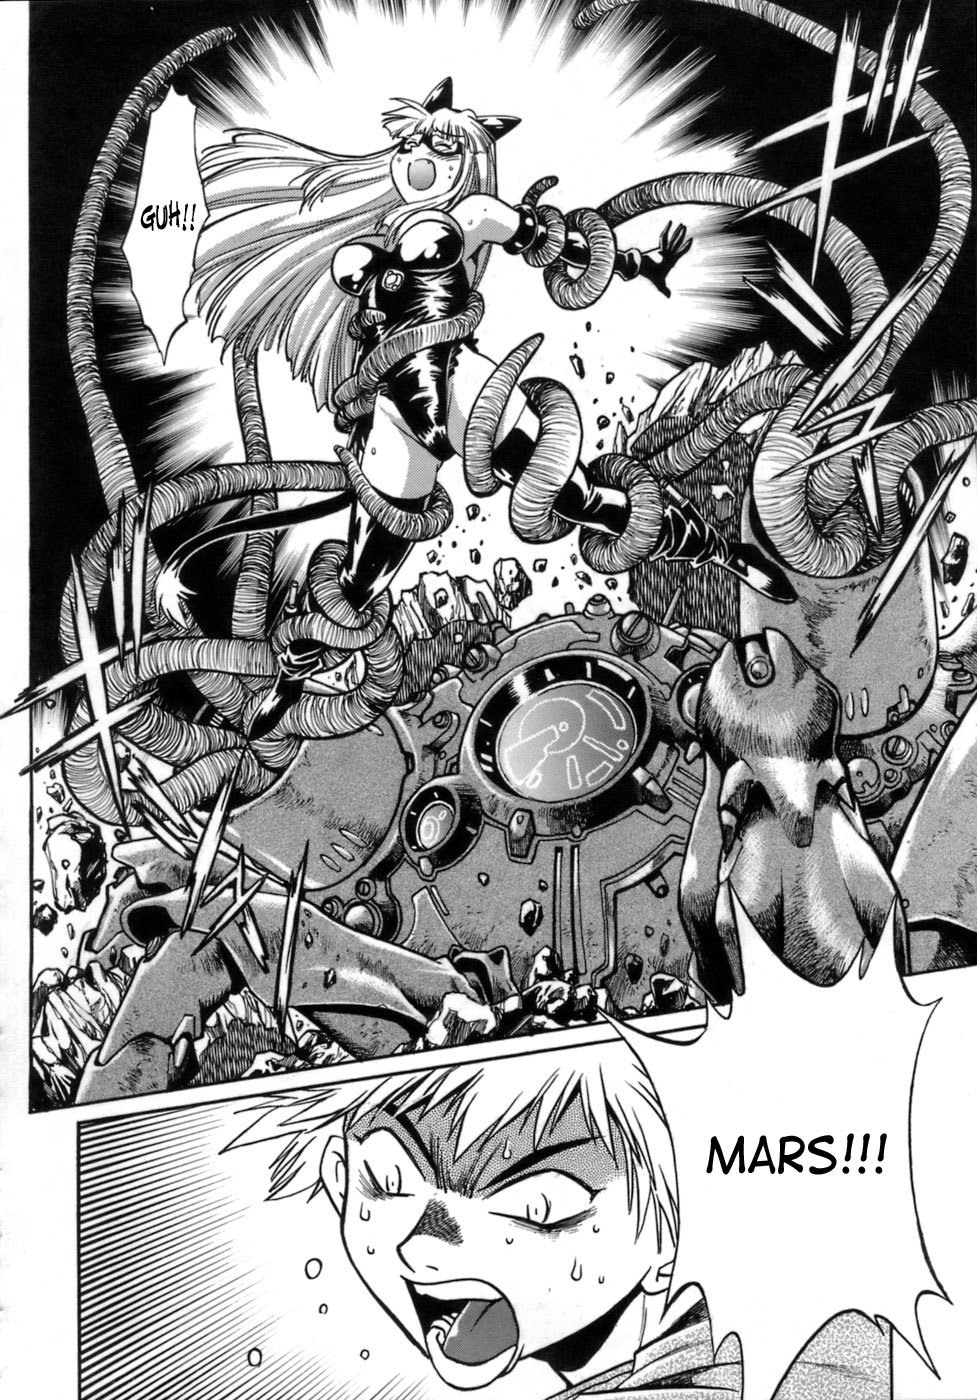 Tail Chaser Vol.1 52 hentai manga